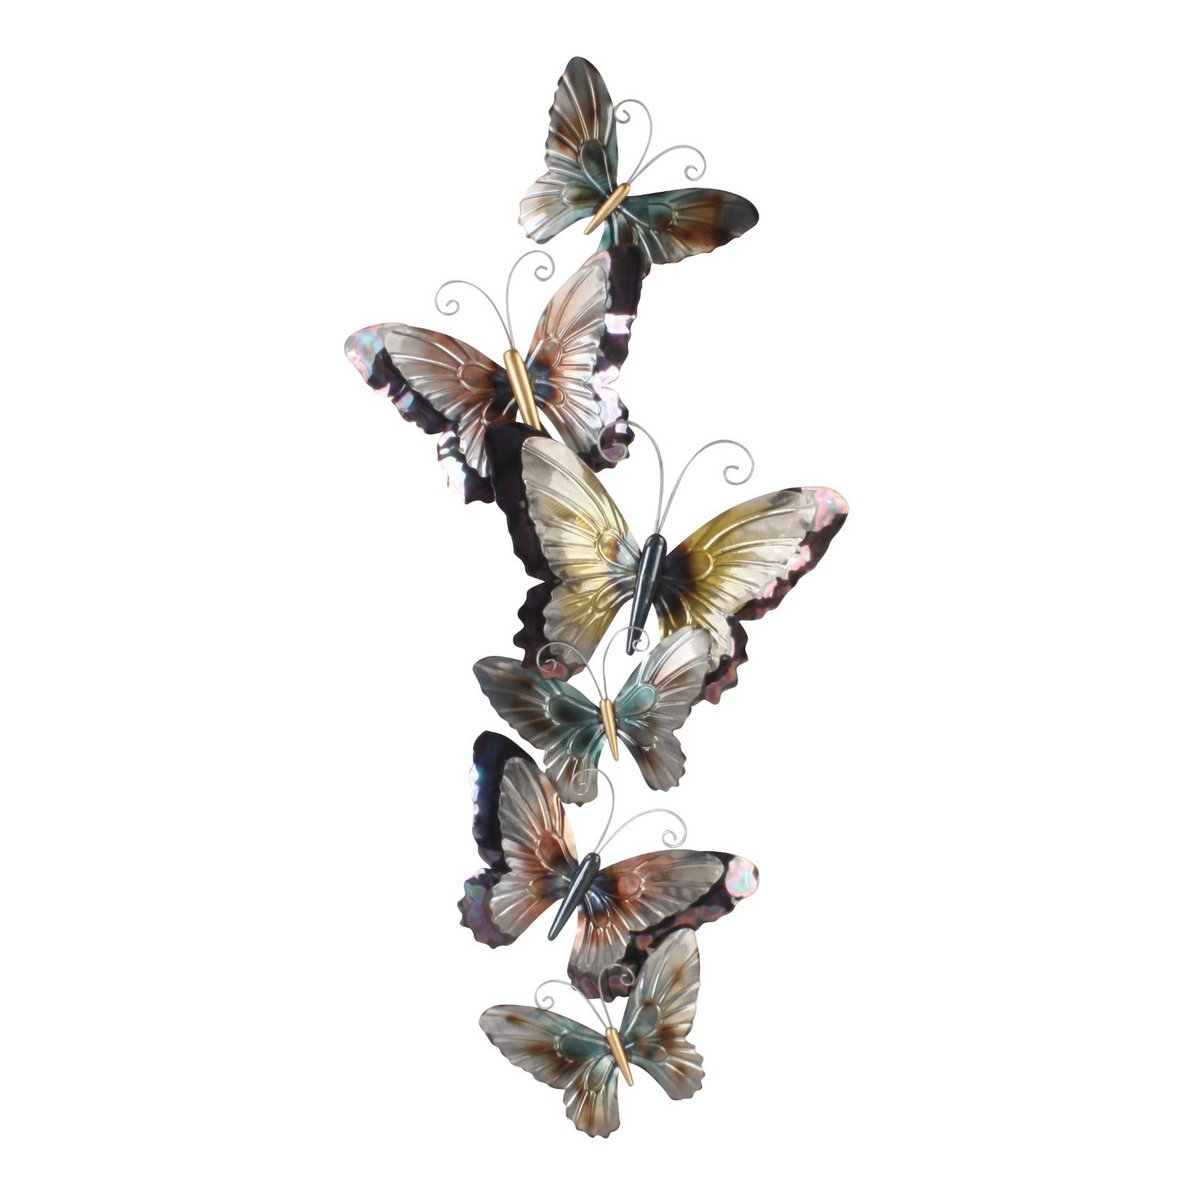 Steigend - 50x115 cm Wanddeko Schmetterlinge Wandbild Metall Wand Dekoration 3D Artishoque